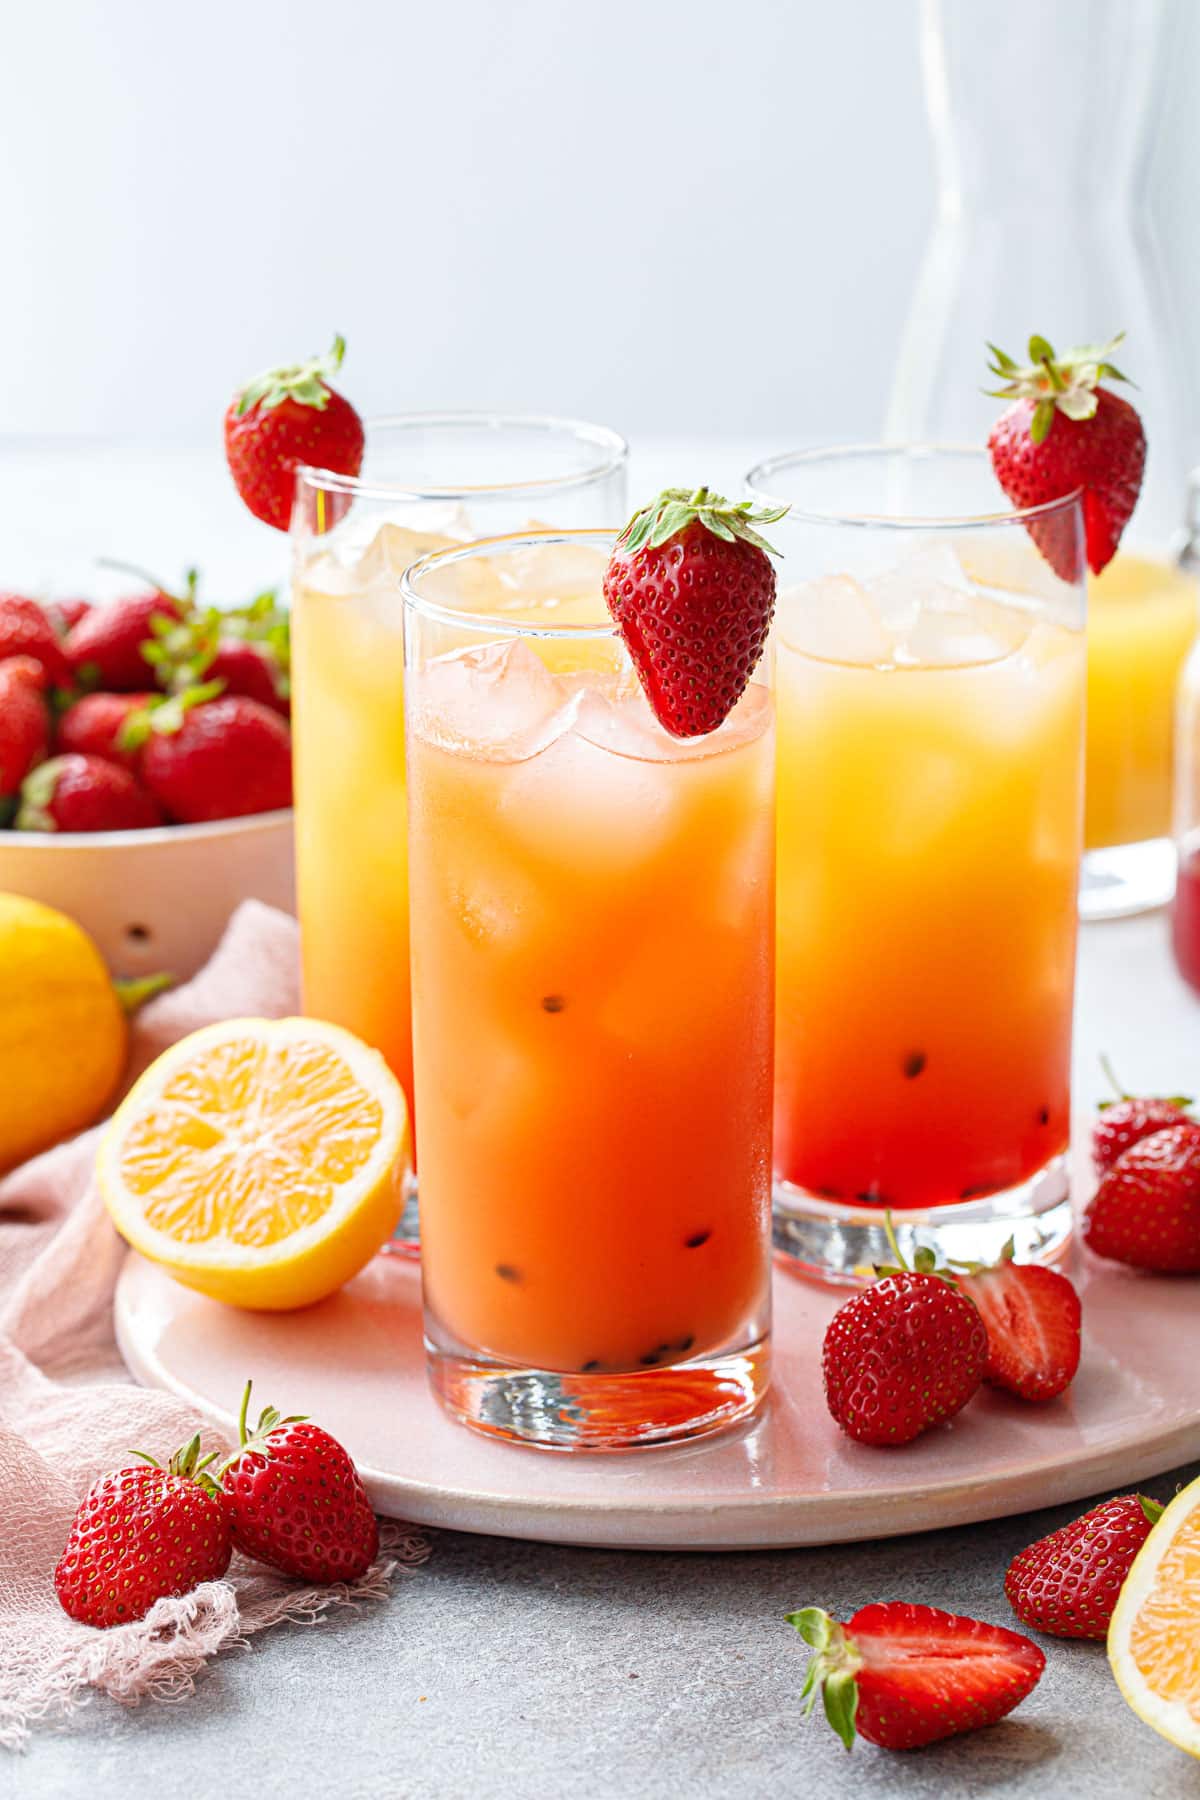 Три стакана Strawberry Passionfruit Lemonade, один перемешали до сплошного оранжевого цвета, другие демонстрируют градиент от красного к желтому, с клубникой на краю каждого стакана.